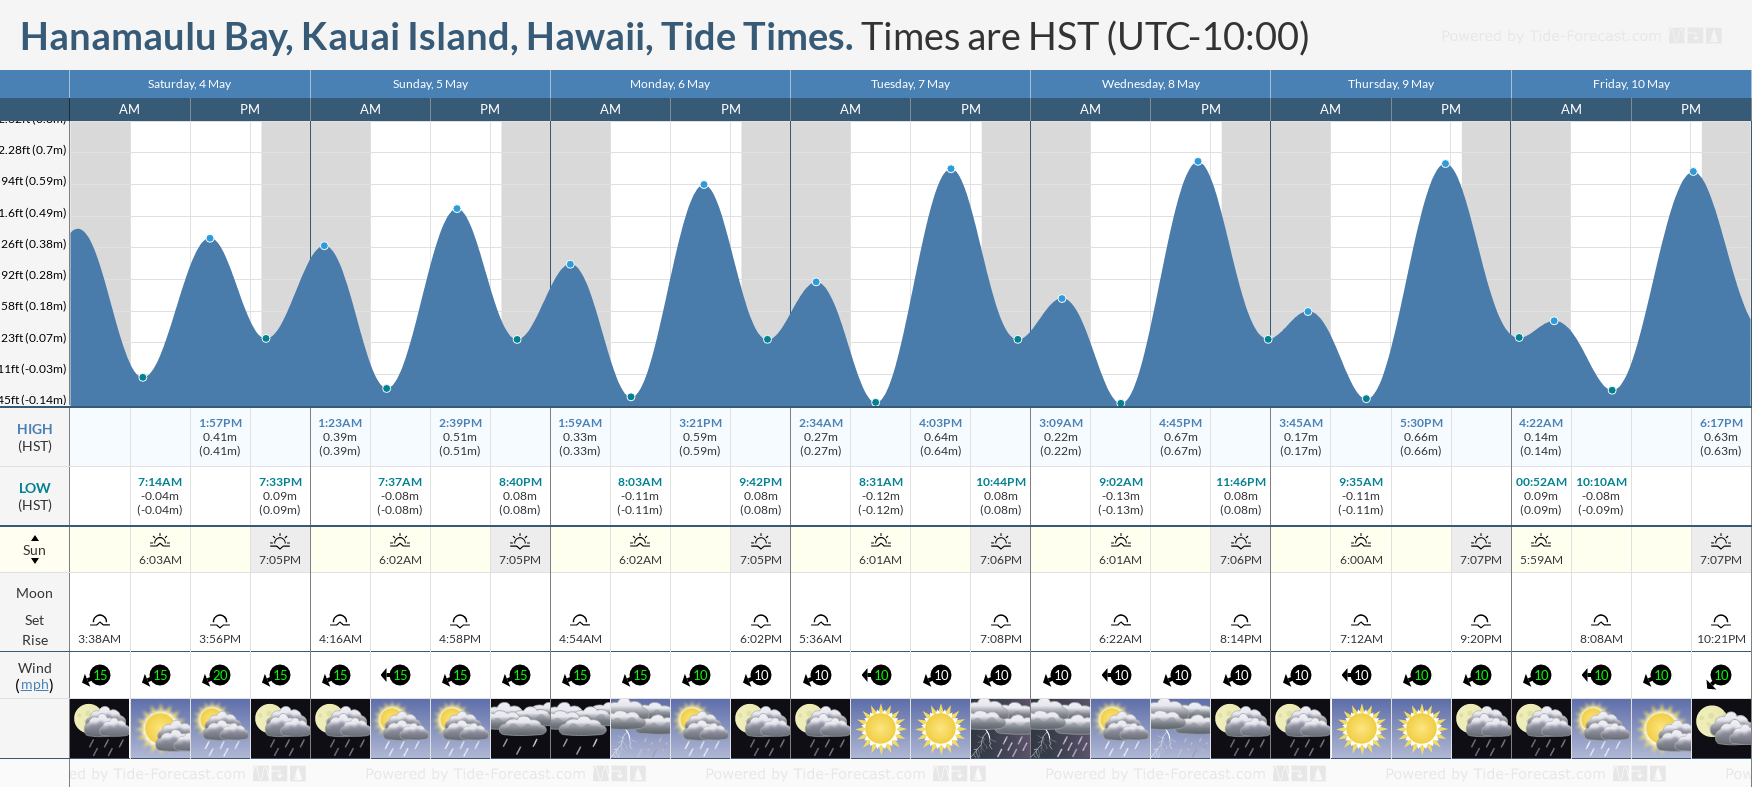 Hanamaulu Bay, Kauai Island, Hawaii Tide Chart including high and low tide tide times for the next 7 days